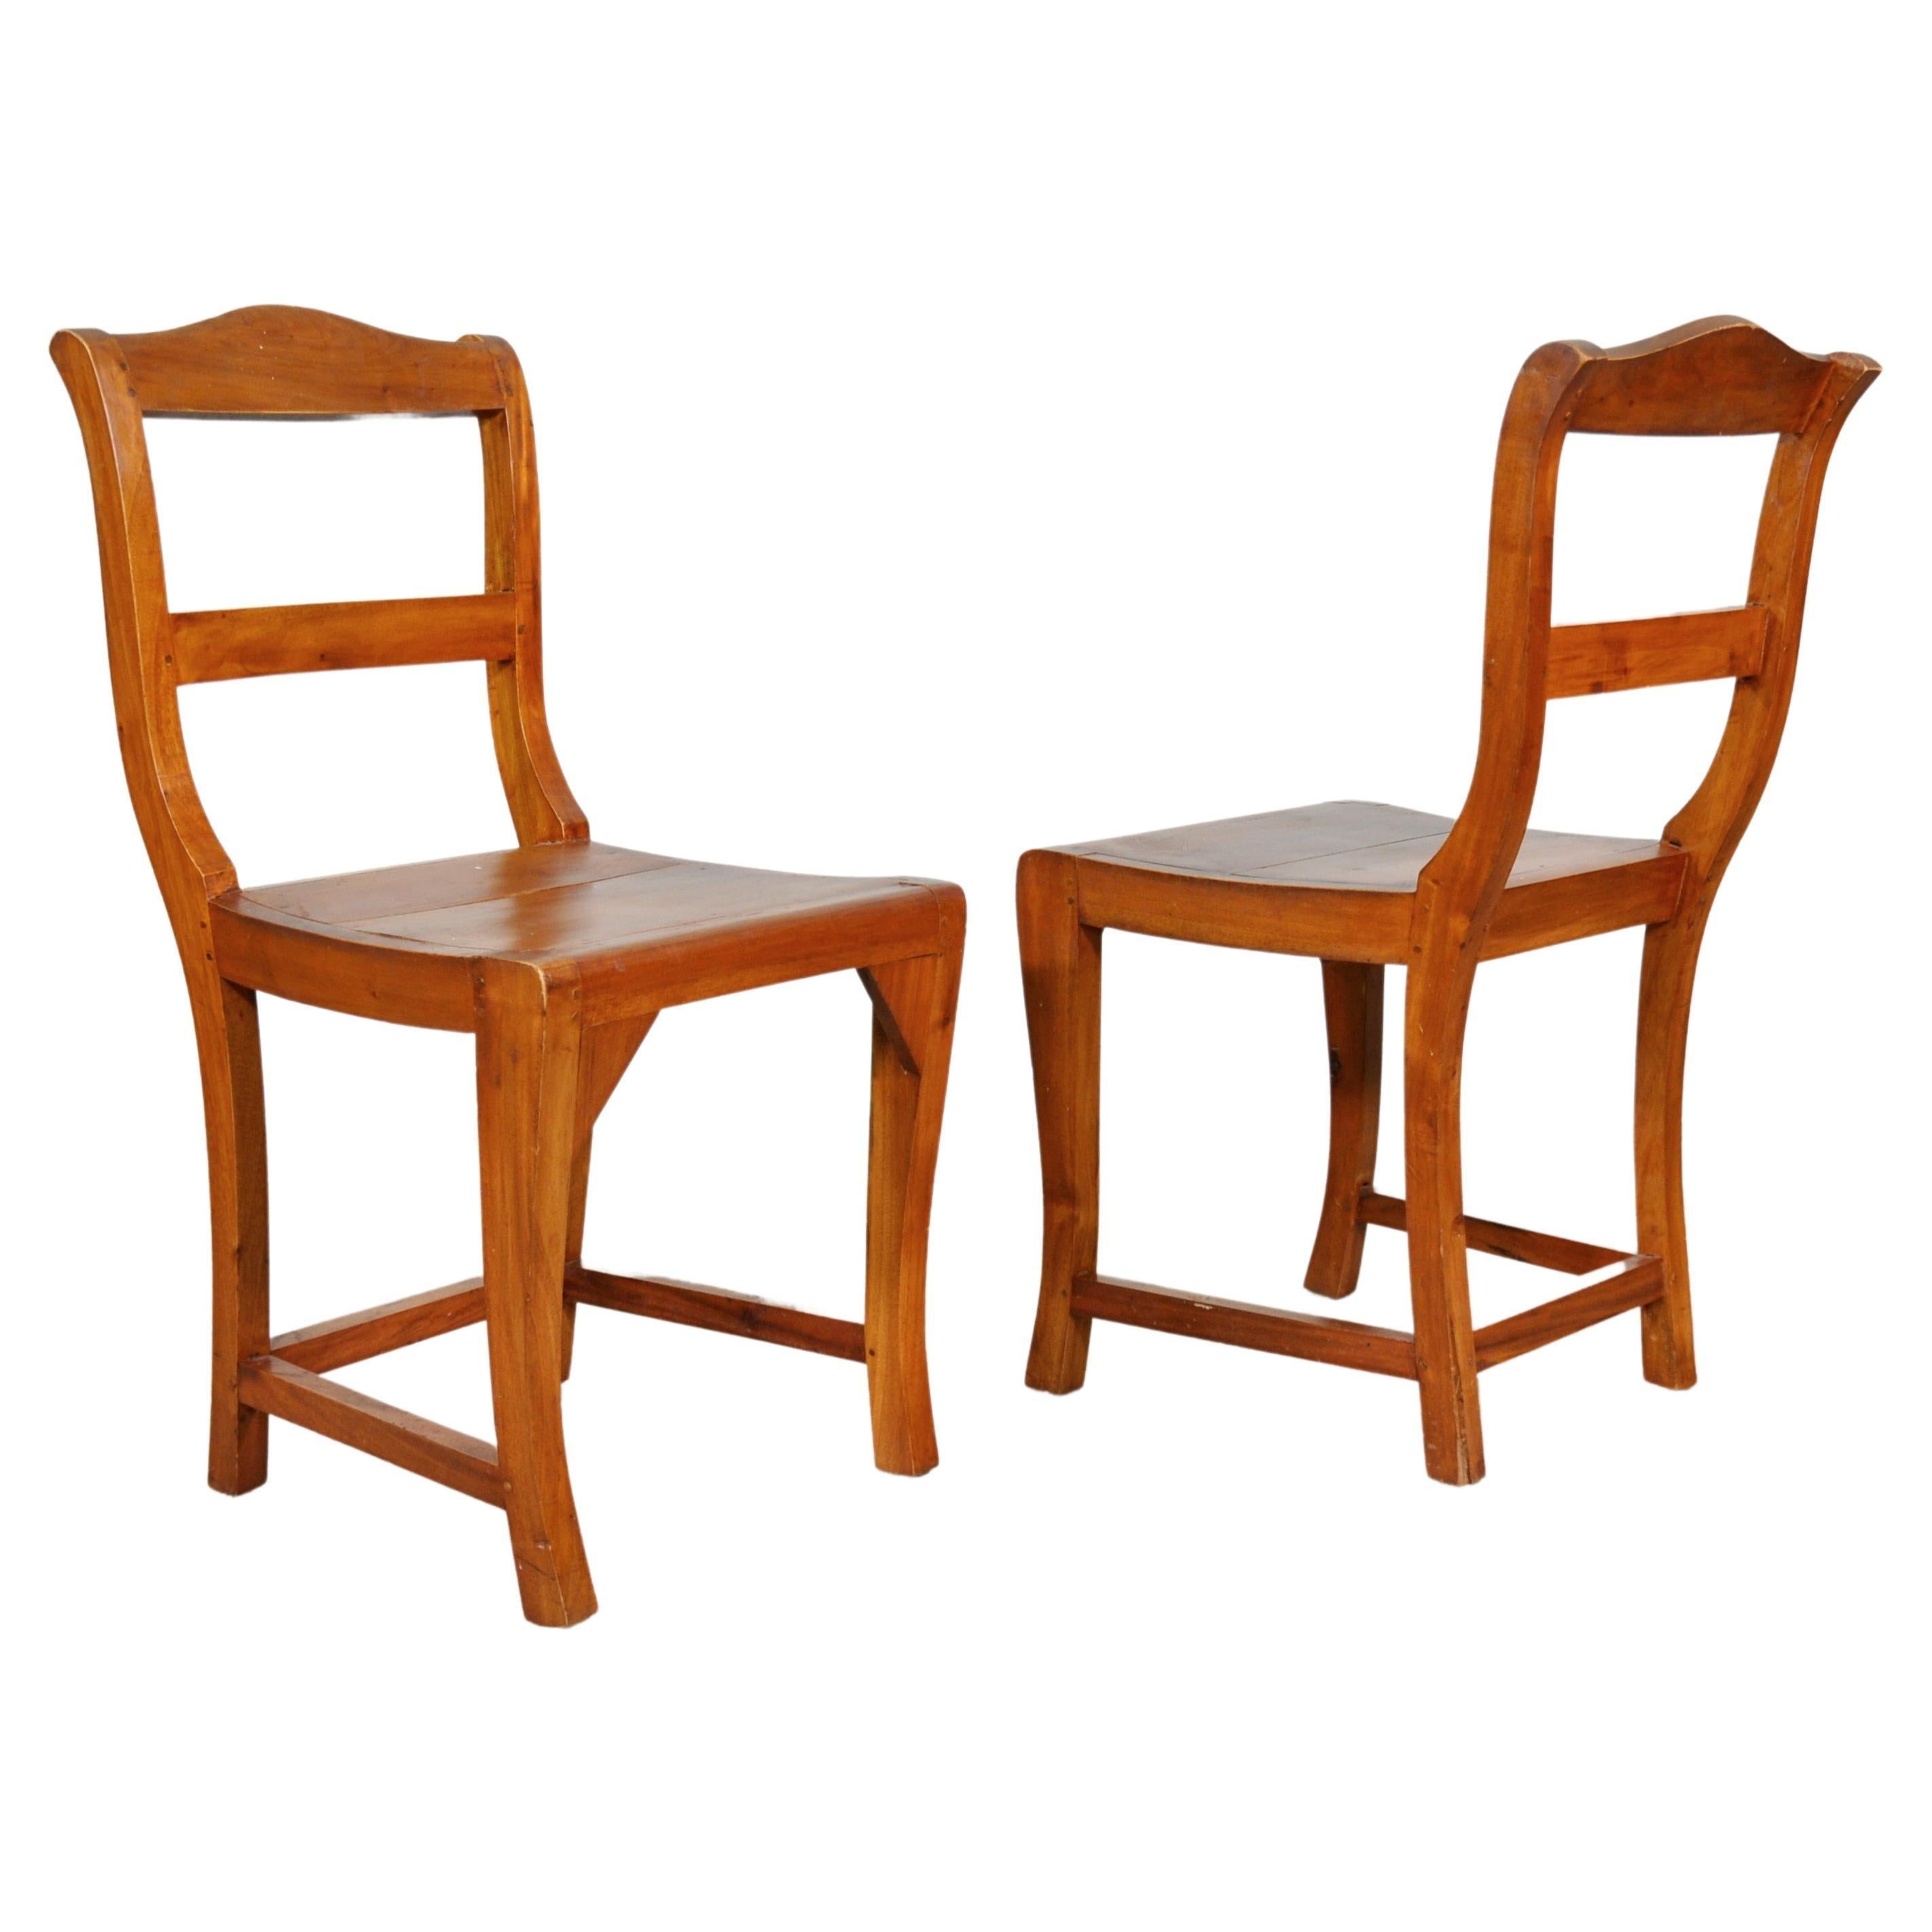 Ungewöhnliches Paar antiker, handgefertigter, geformter Stühle mit Leiterlehne aus Obstholz. Um 1880. Ideal für die Verwendung in einem Flur / Abstellraum. Rustikaler französischer Landhausstil, der sich in einem Strandhaus, einem Bauernhaus oder